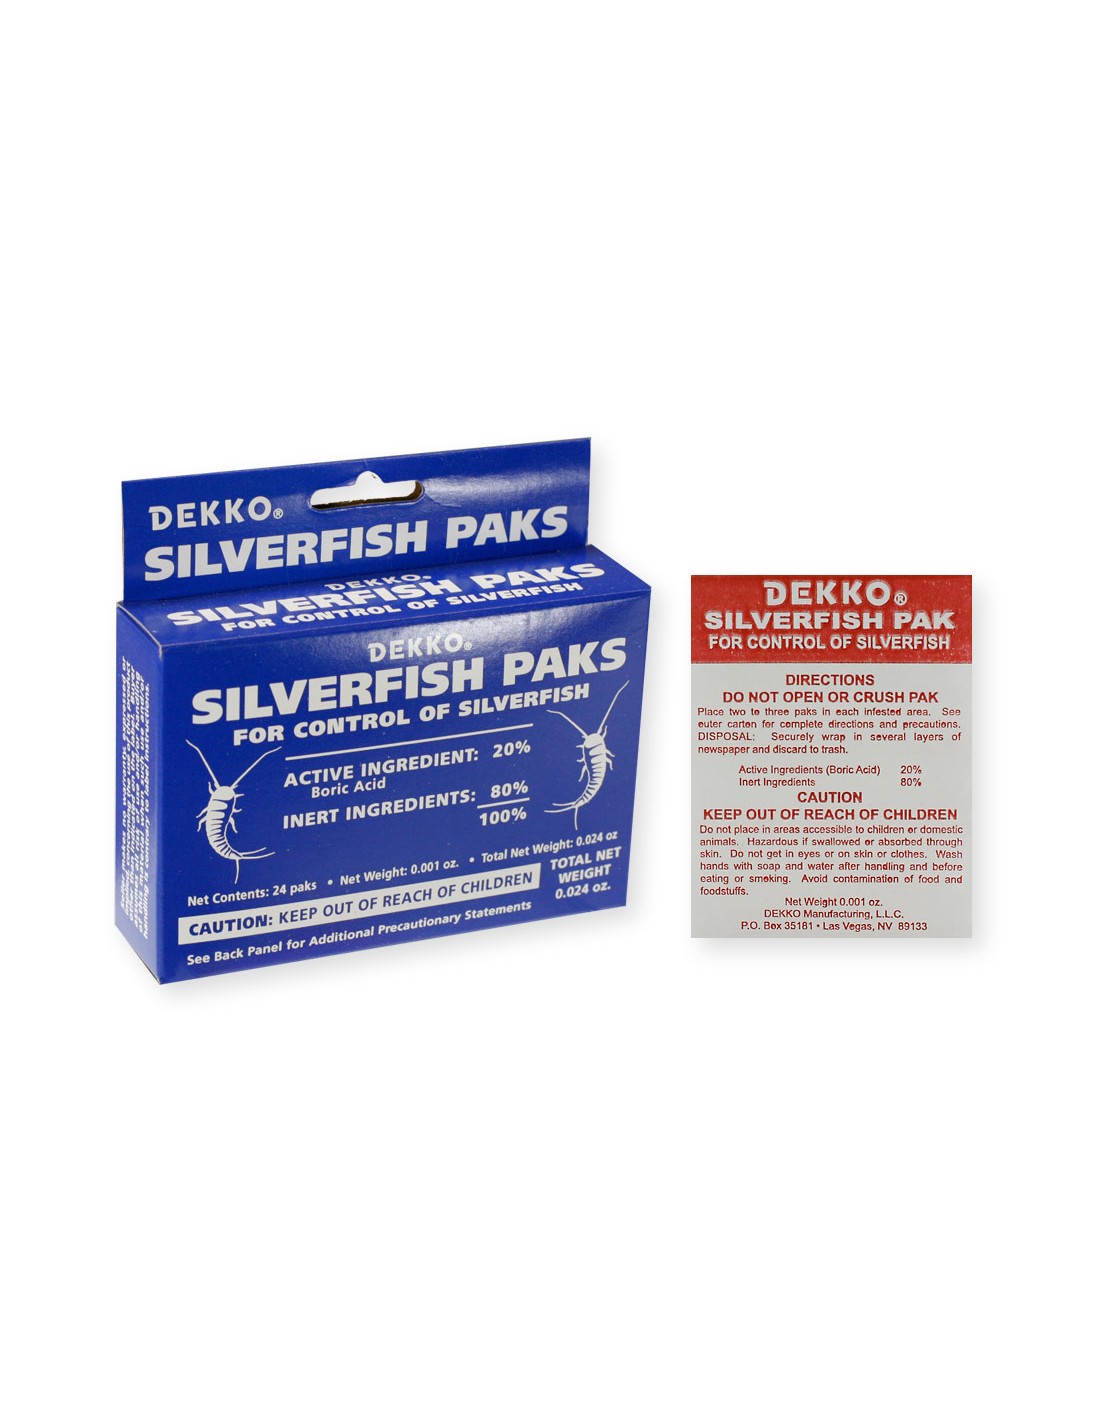 Do you ship Dekko Silverfish paks to Canada?